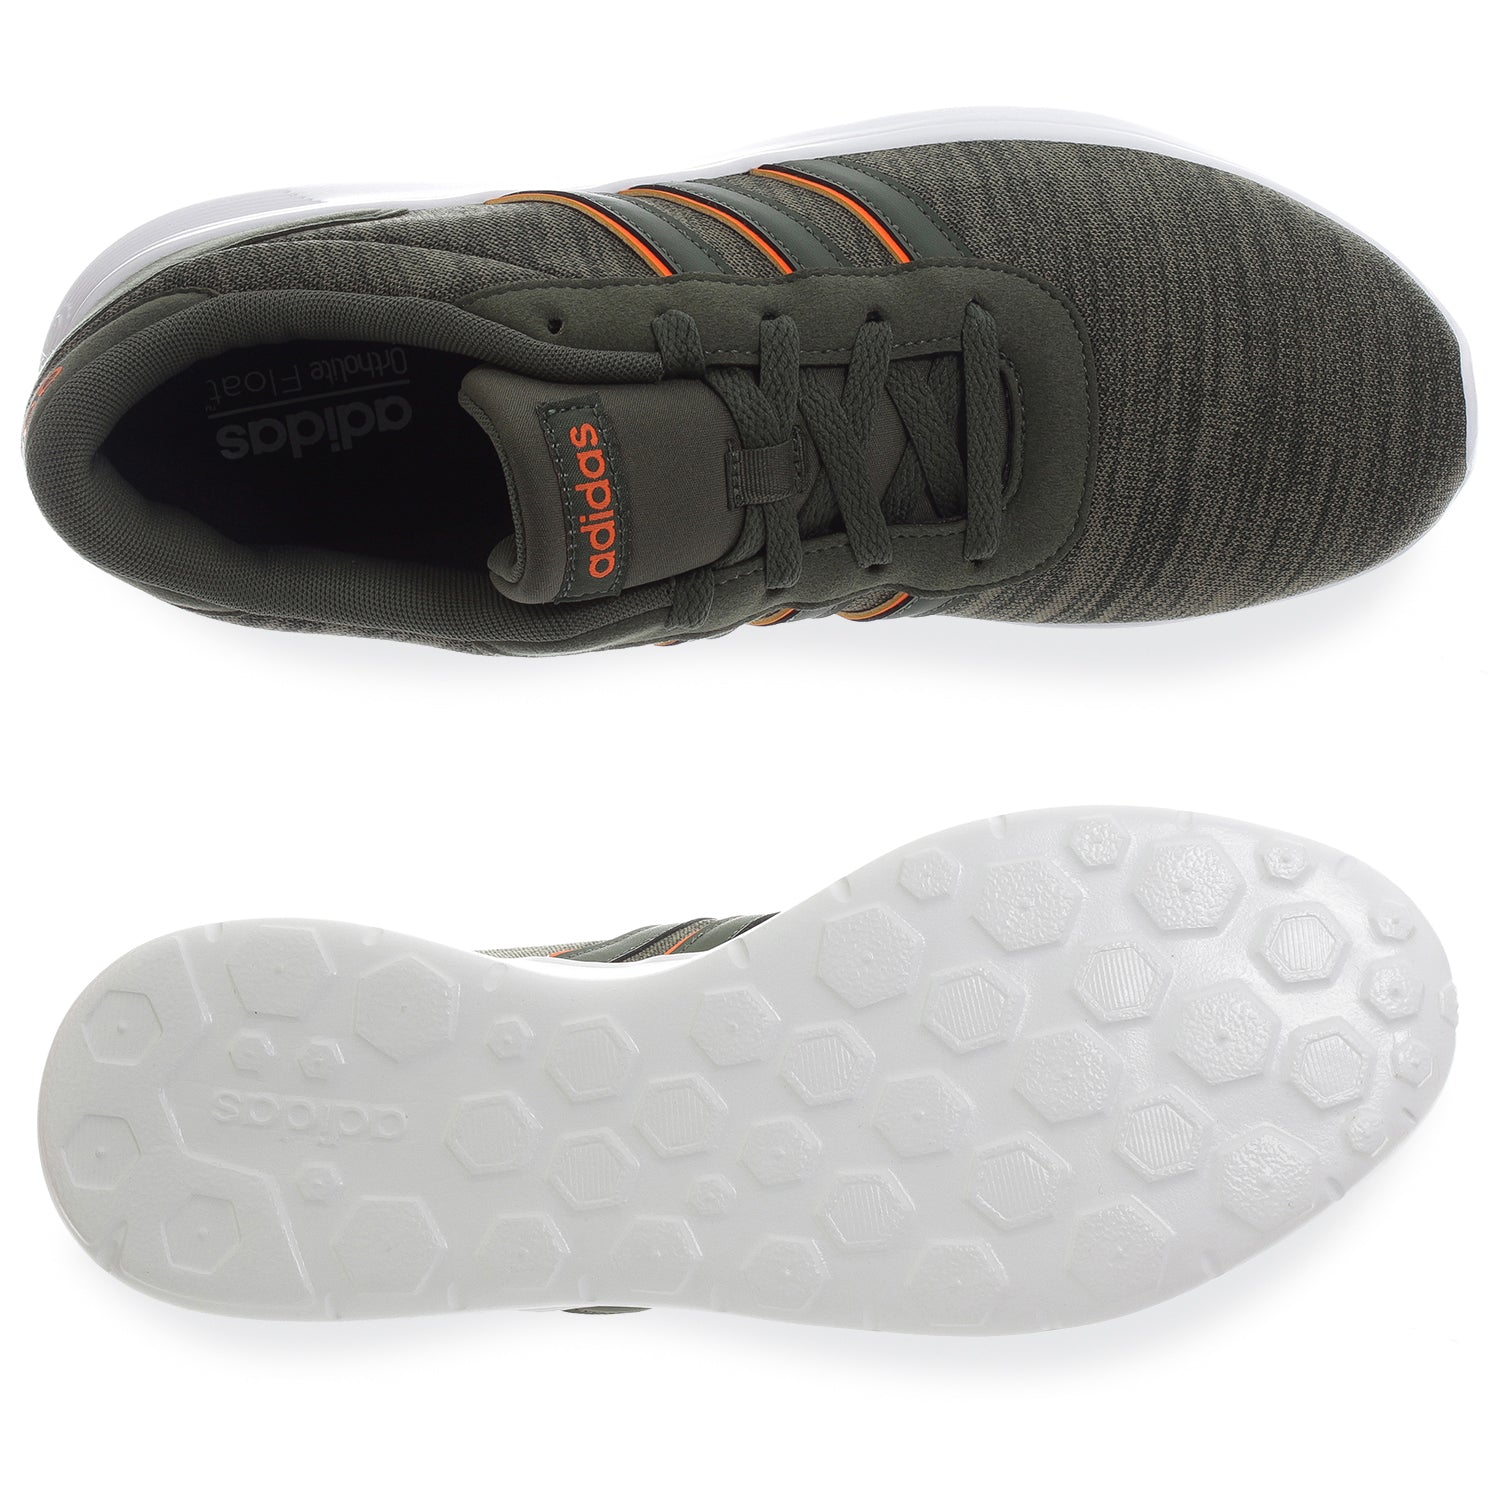 Hueso contar hasta Desconexión Tenis Adidas Lite Racer - B43720 - Verde Oliva - Hombre | Shoelander.com -  Footwear Retail